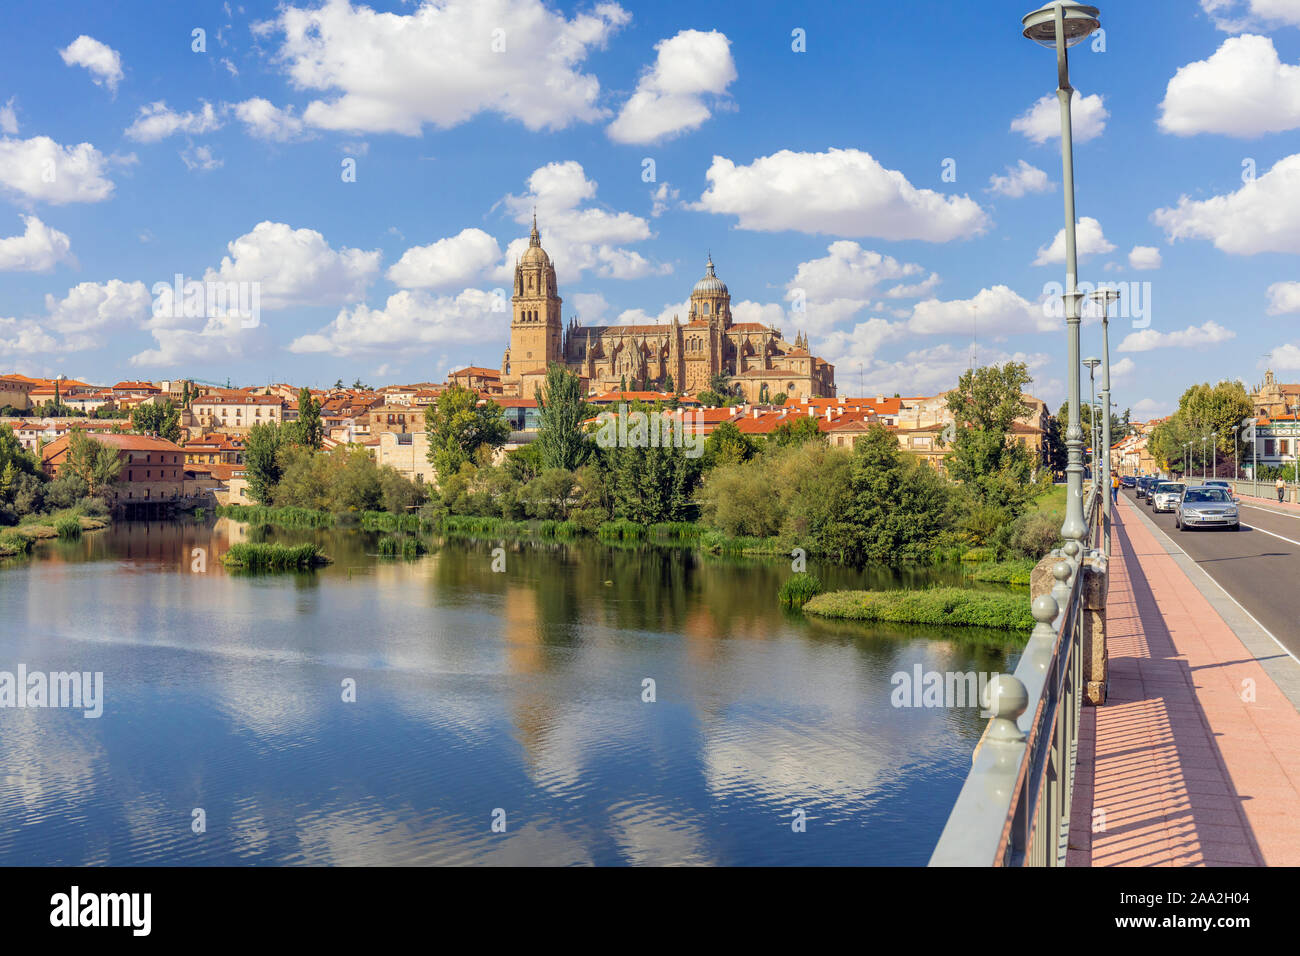 Il tardo gotica e barocca e Catedral Nueva, o la nuova cattedrale, visto oltre il fiume Tormes, Salamanca, provincia di Salamanca Castiglia e Leon, Spagna. Th Foto Stock